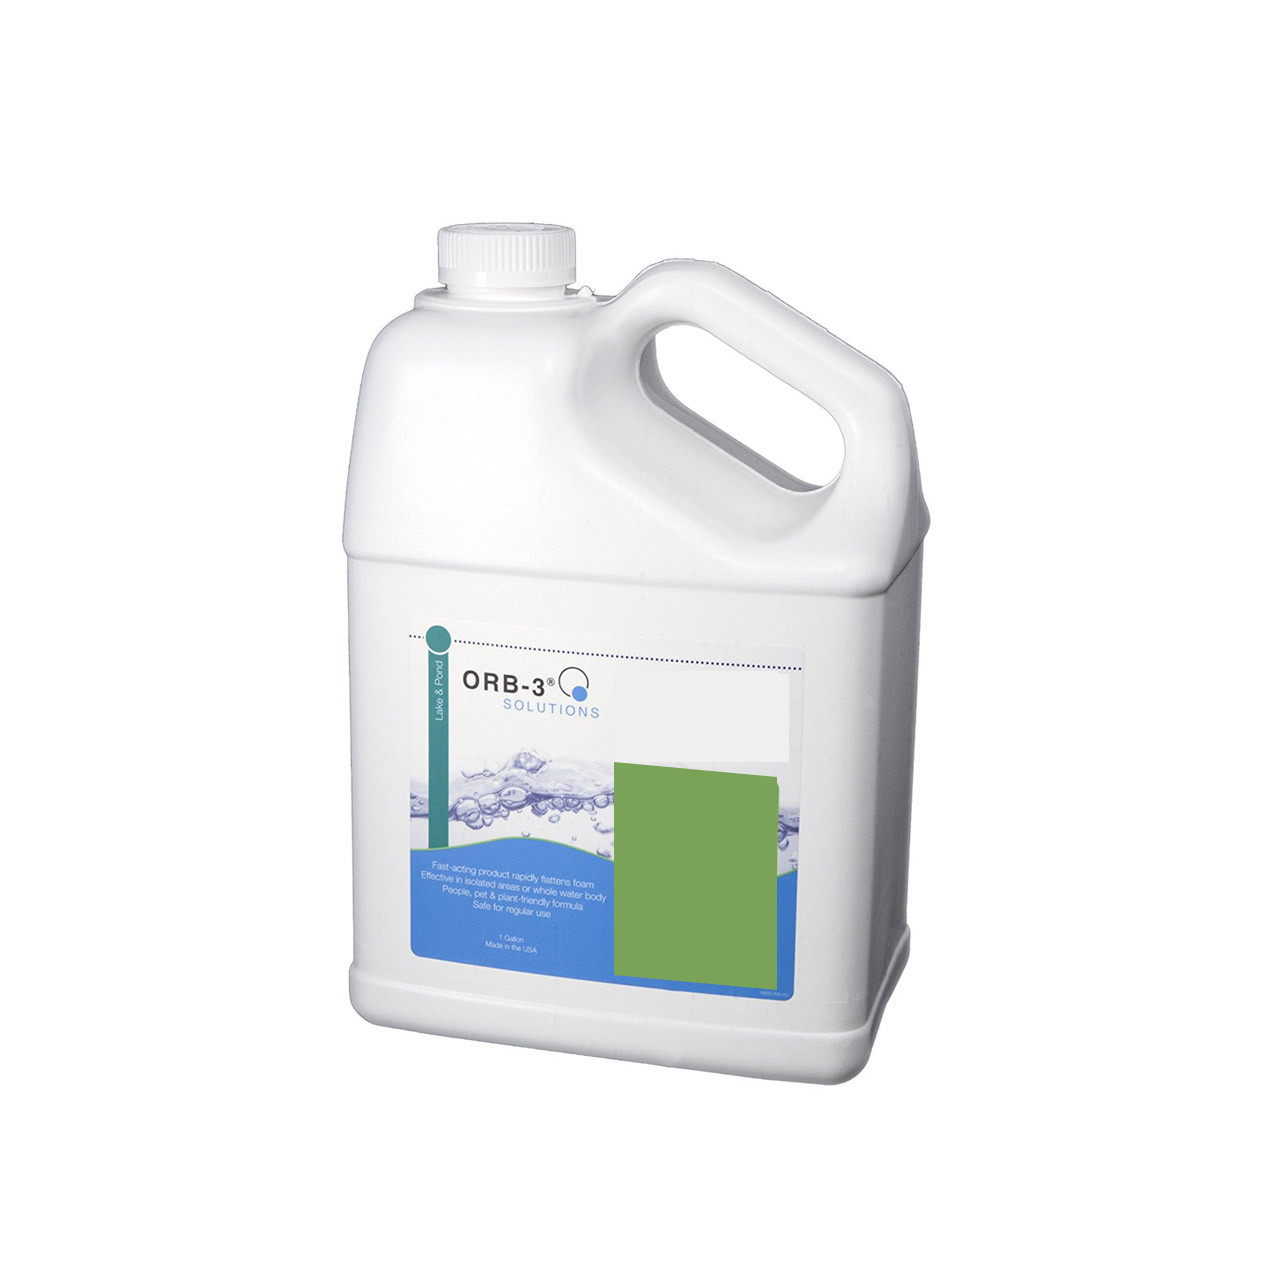 Aminoácido líquido ultraconcentrado para agua potable o alimento seco Orb-3 de Great Lakes Biosystems